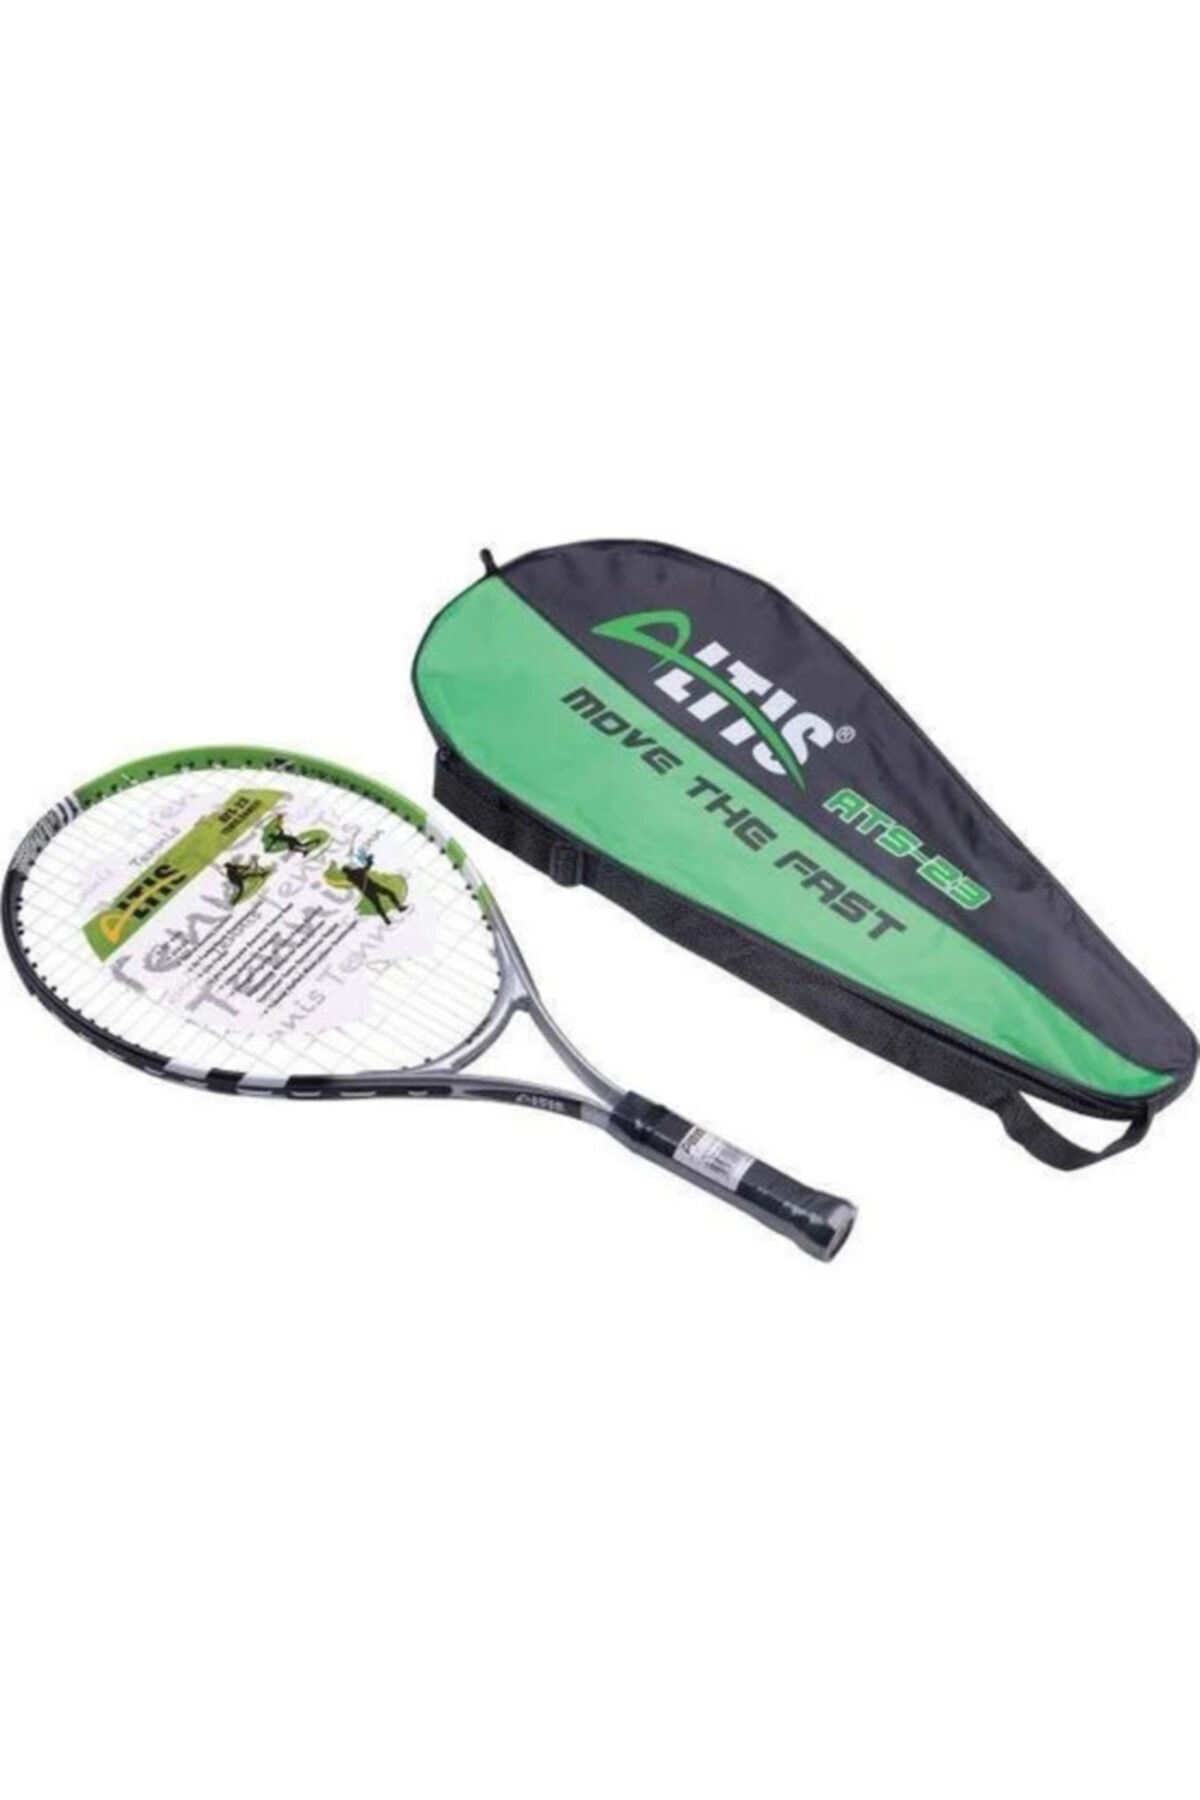 ALTIS Ats Çocuk Tenis Raketi 21"